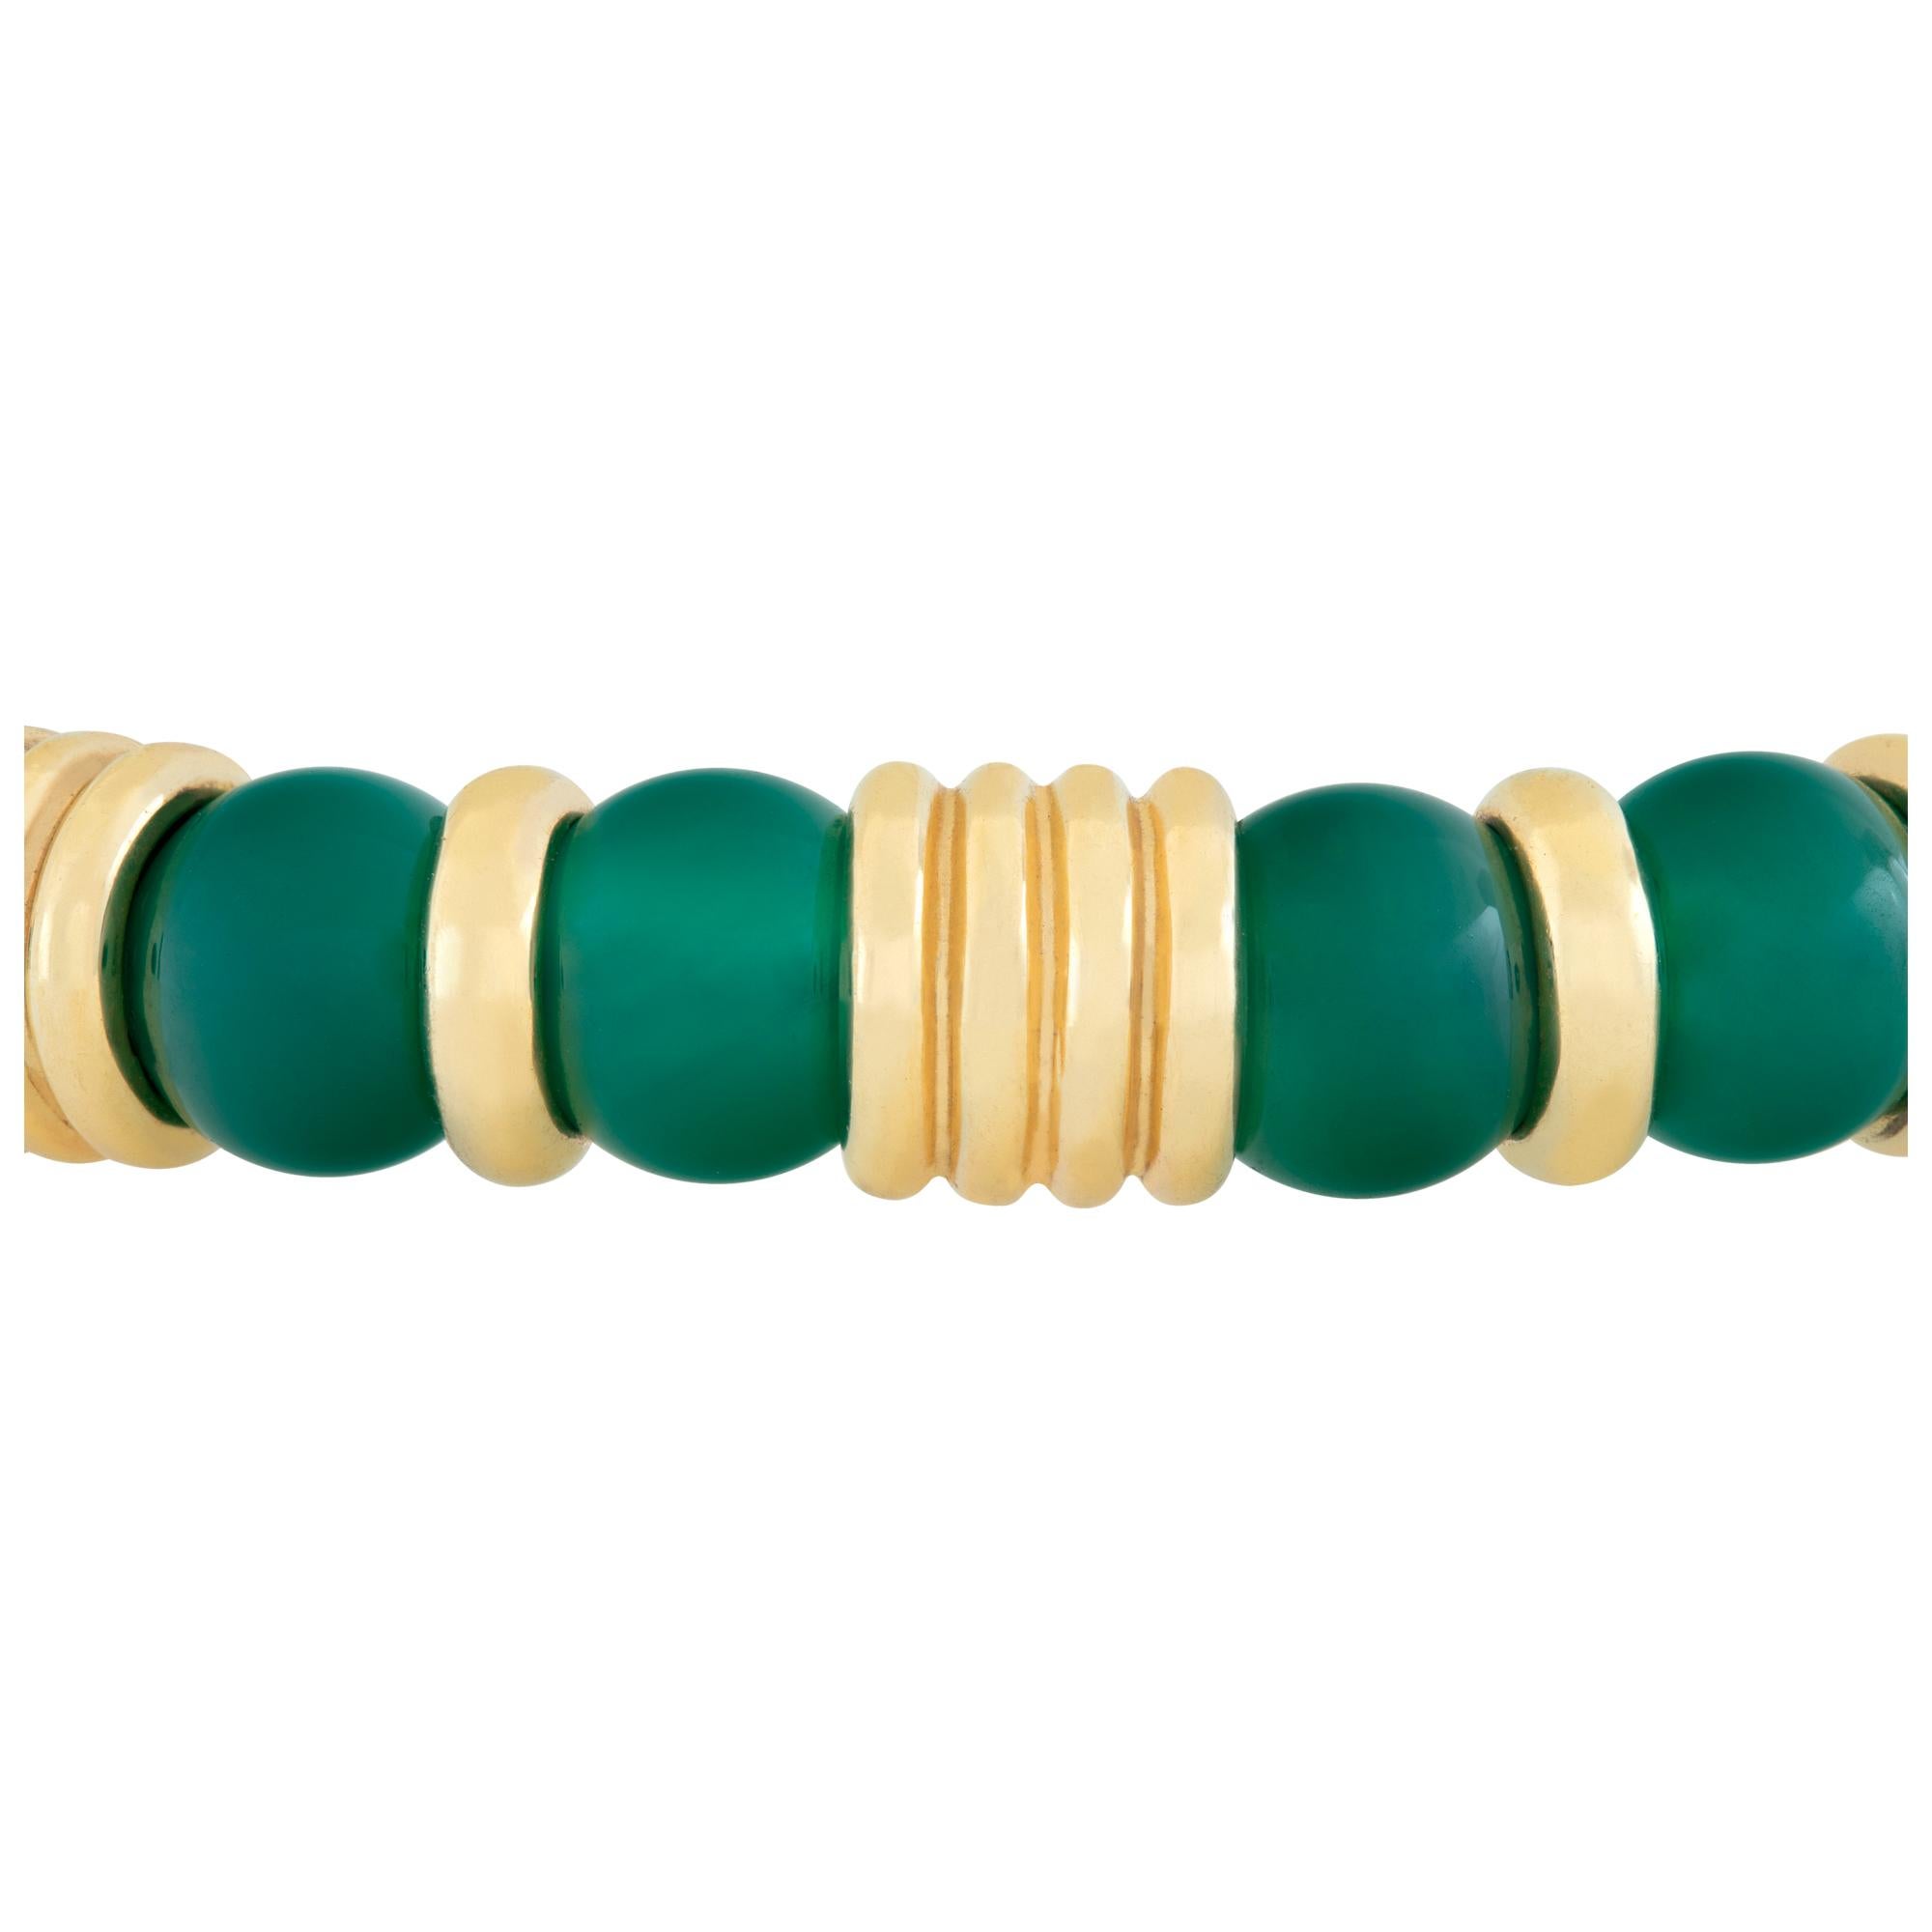 Caprice jade bangle bracelet in 18k